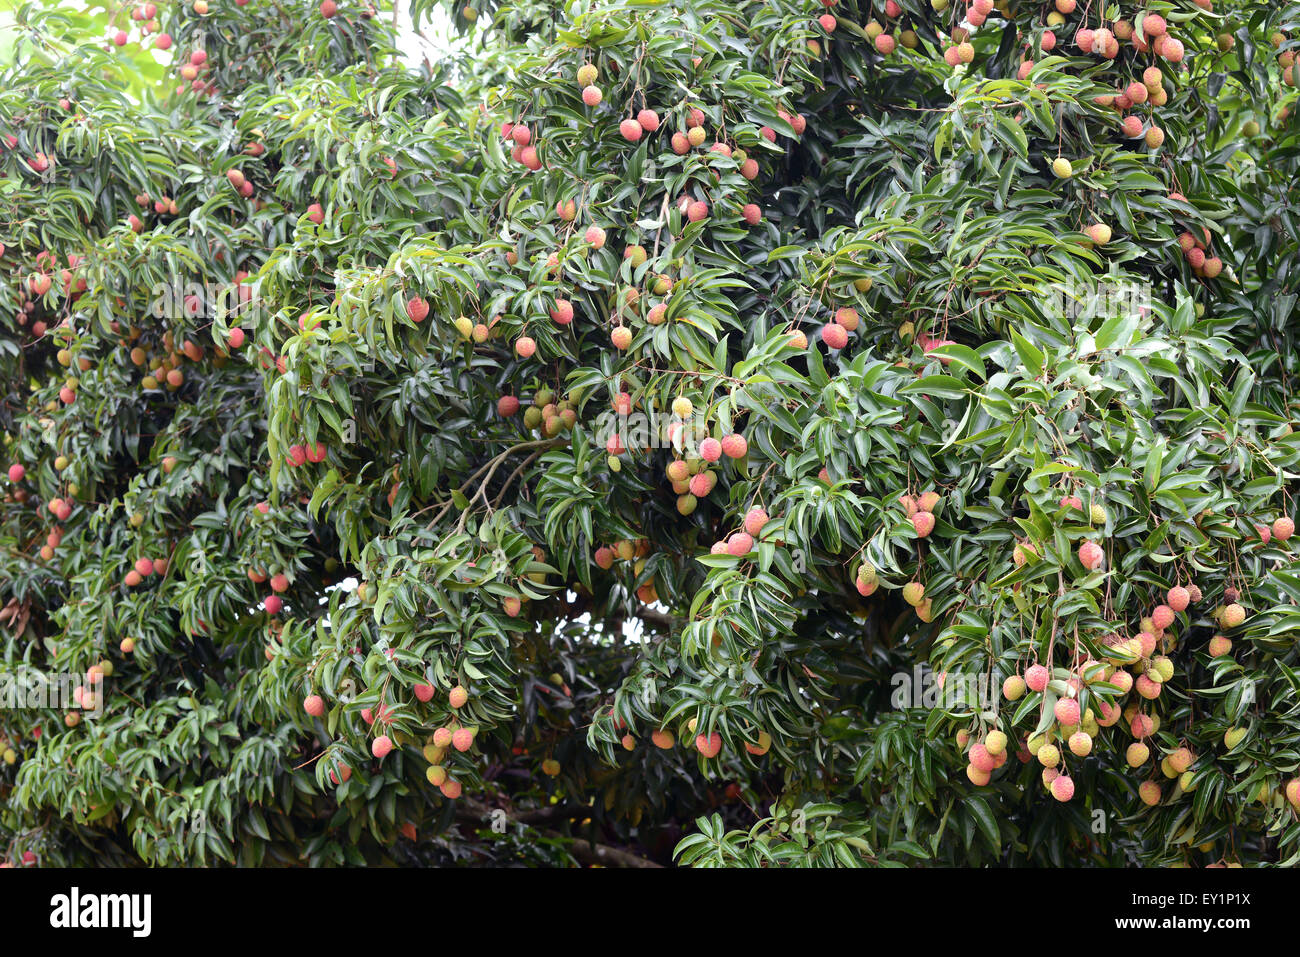 Lichi frais sur arbre dans lichi orchard Banque D'Images